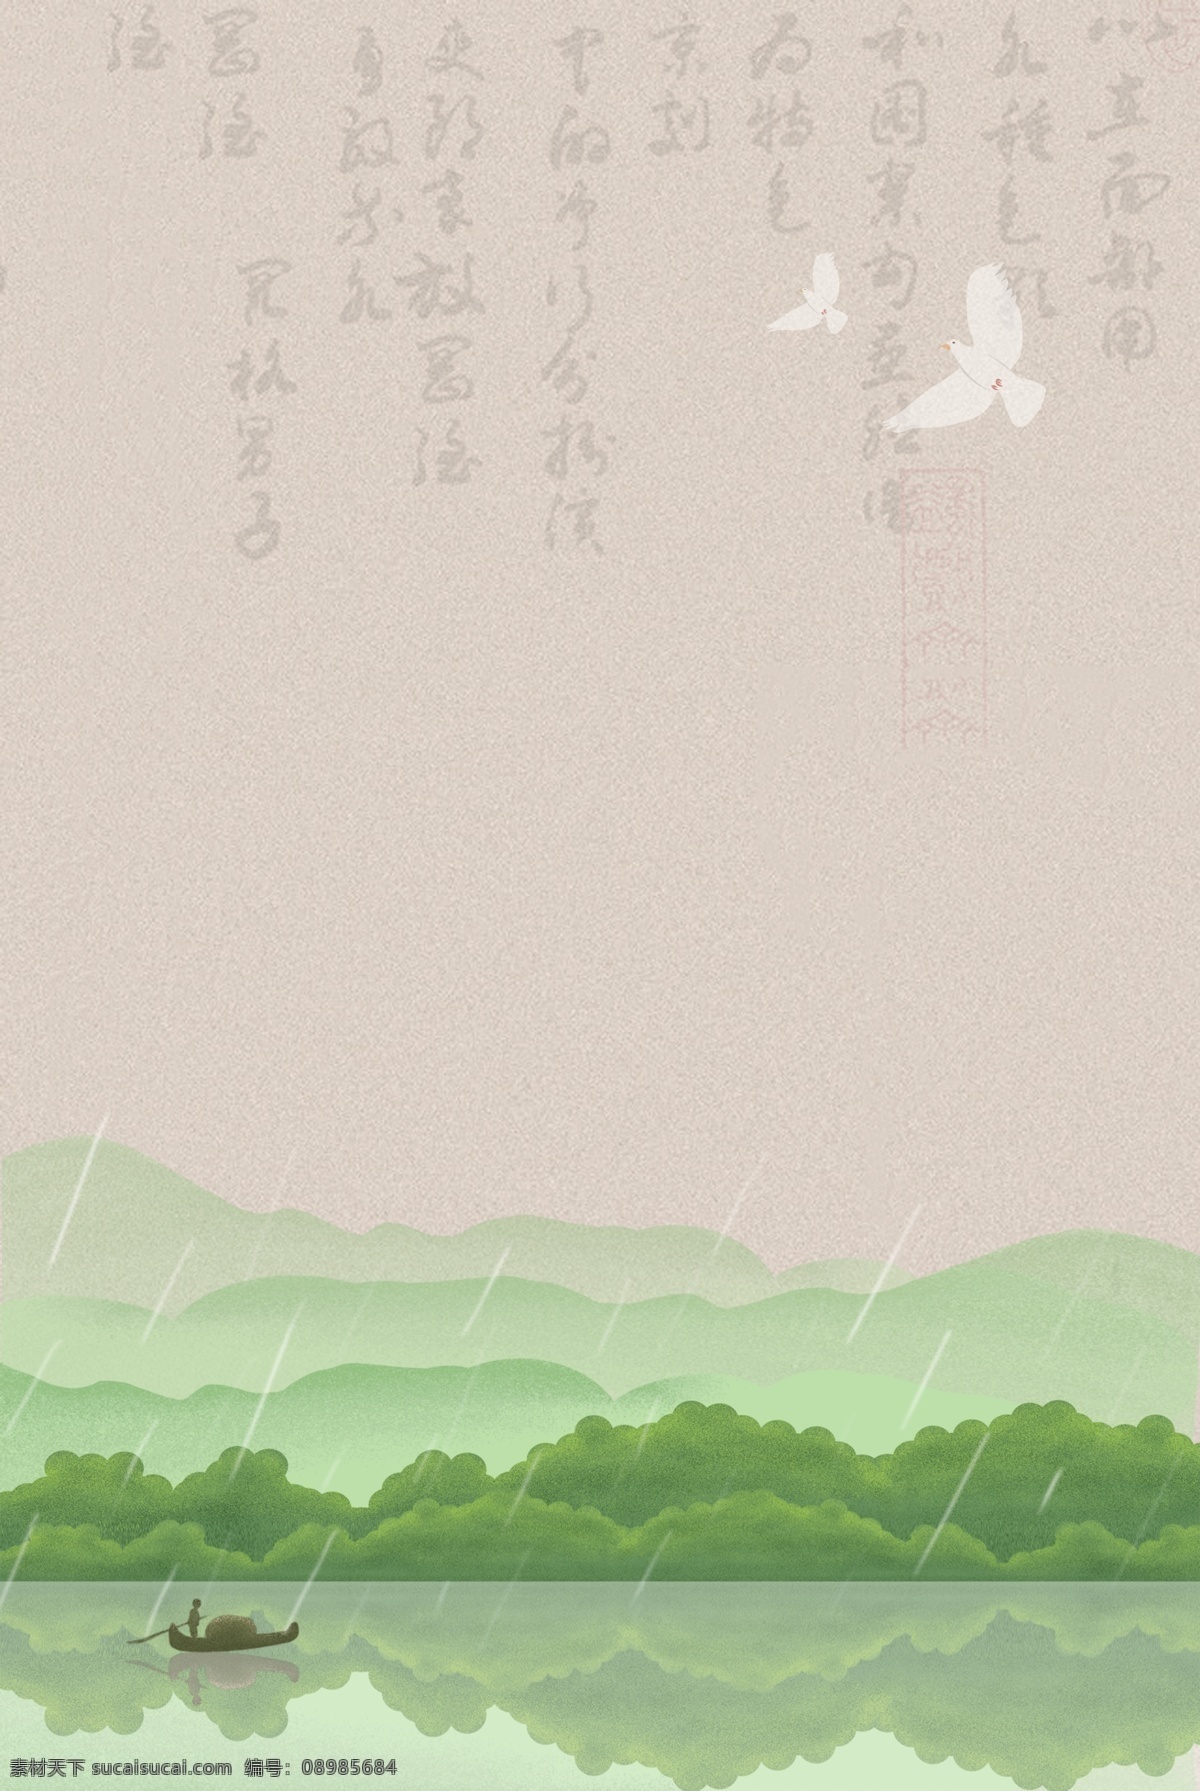 复古 中国 风 山水 书法 背景 图 中国风 绿树 草地 质感 文艺